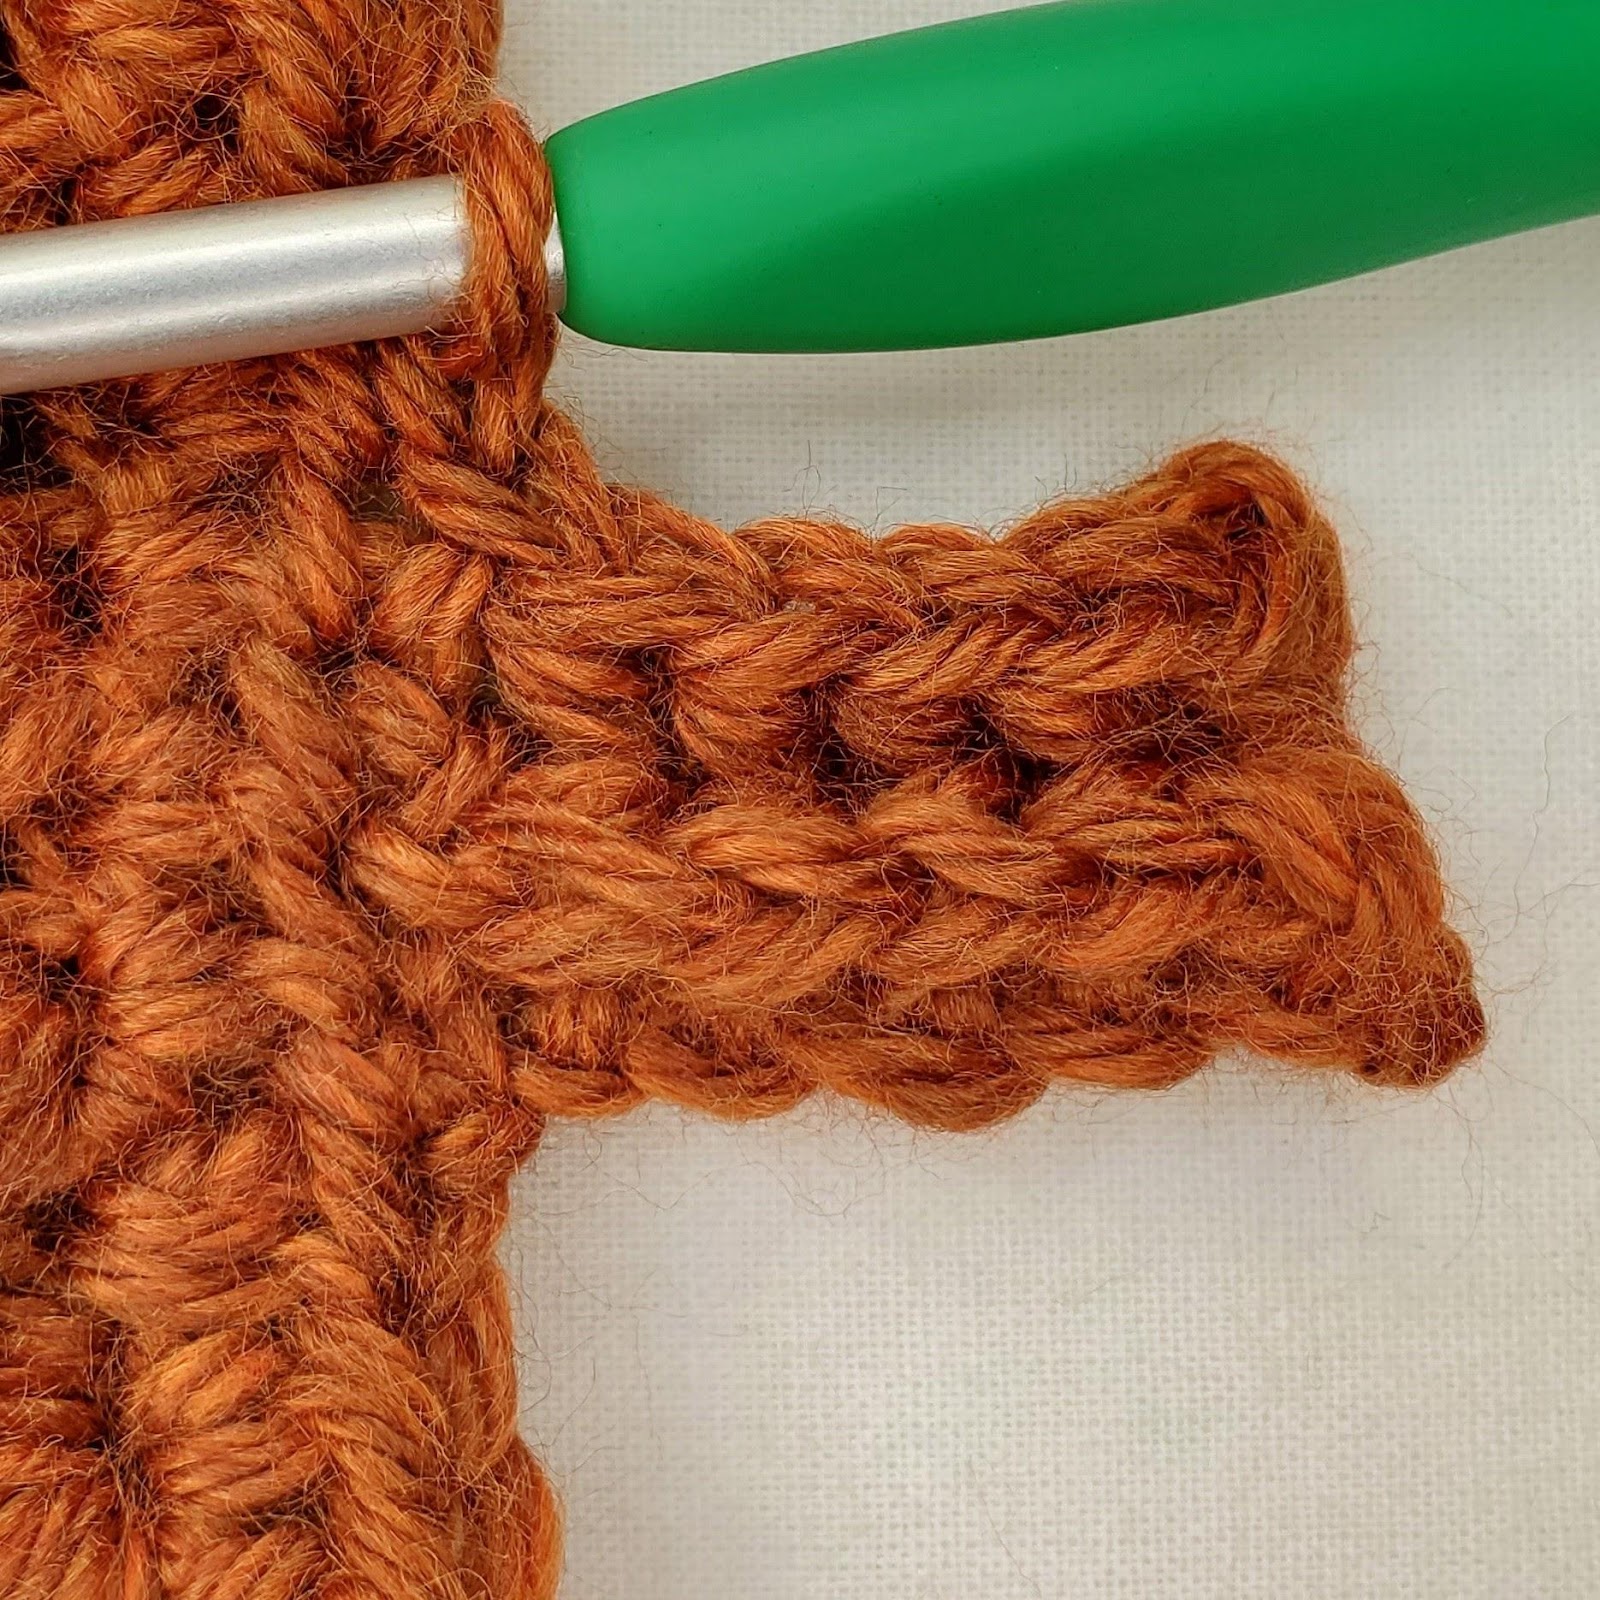 Falling Feathers Gloves - Free Crochet Pattern